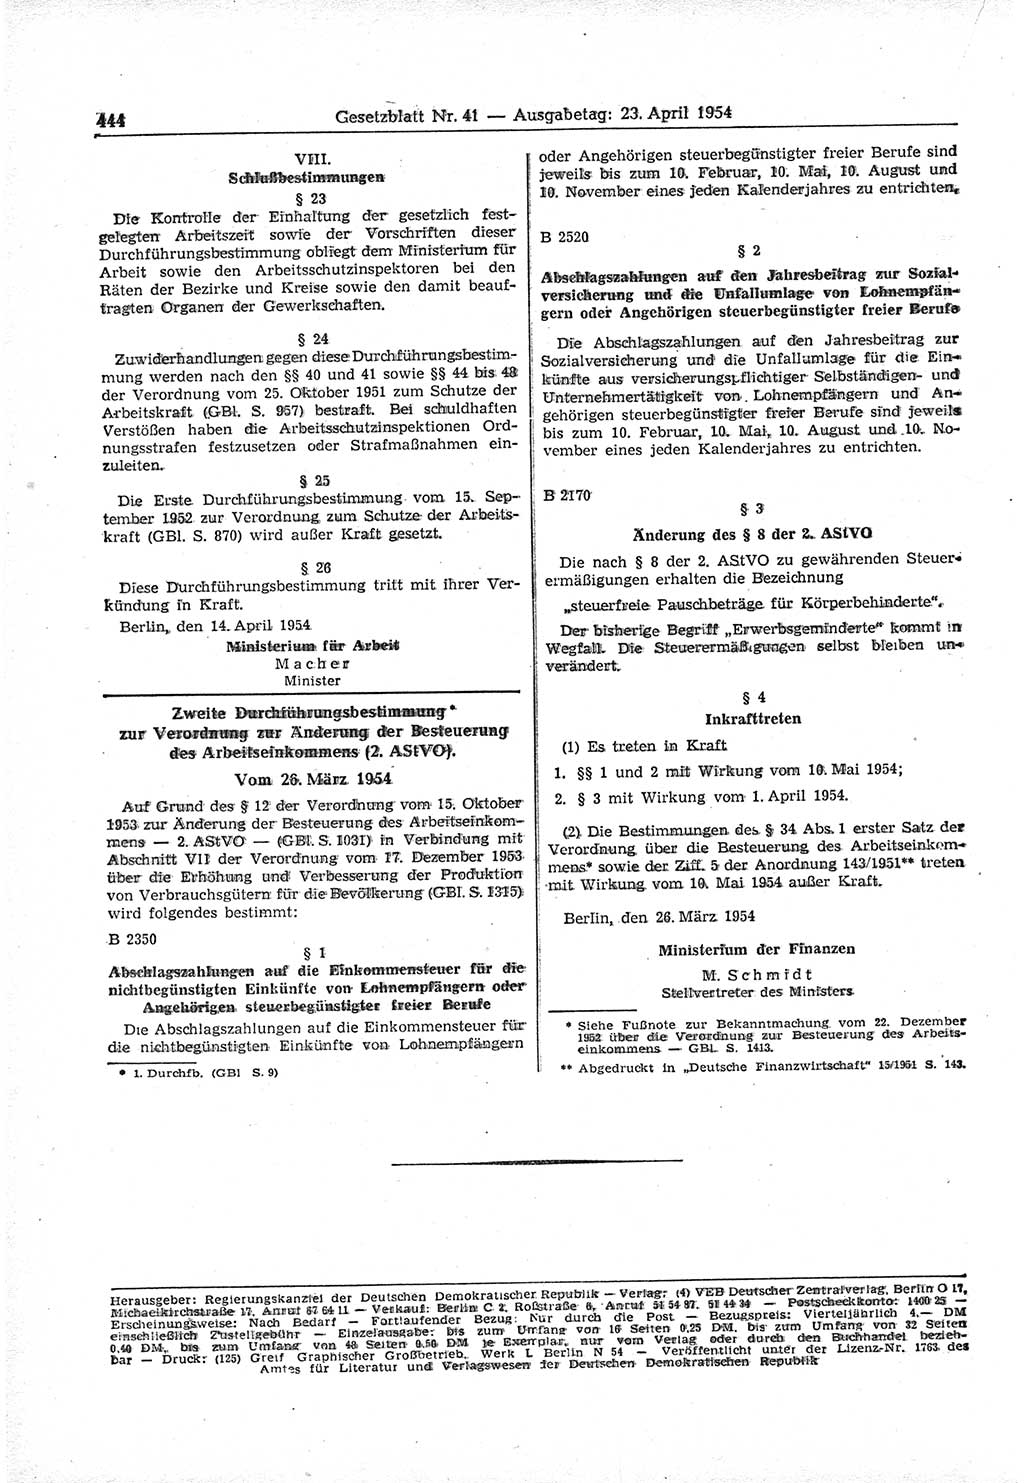 Gesetzblatt (GBl.) der Deutschen Demokratischen Republik (DDR) 1954, Seite 444 (GBl. DDR 1954, S. 444)